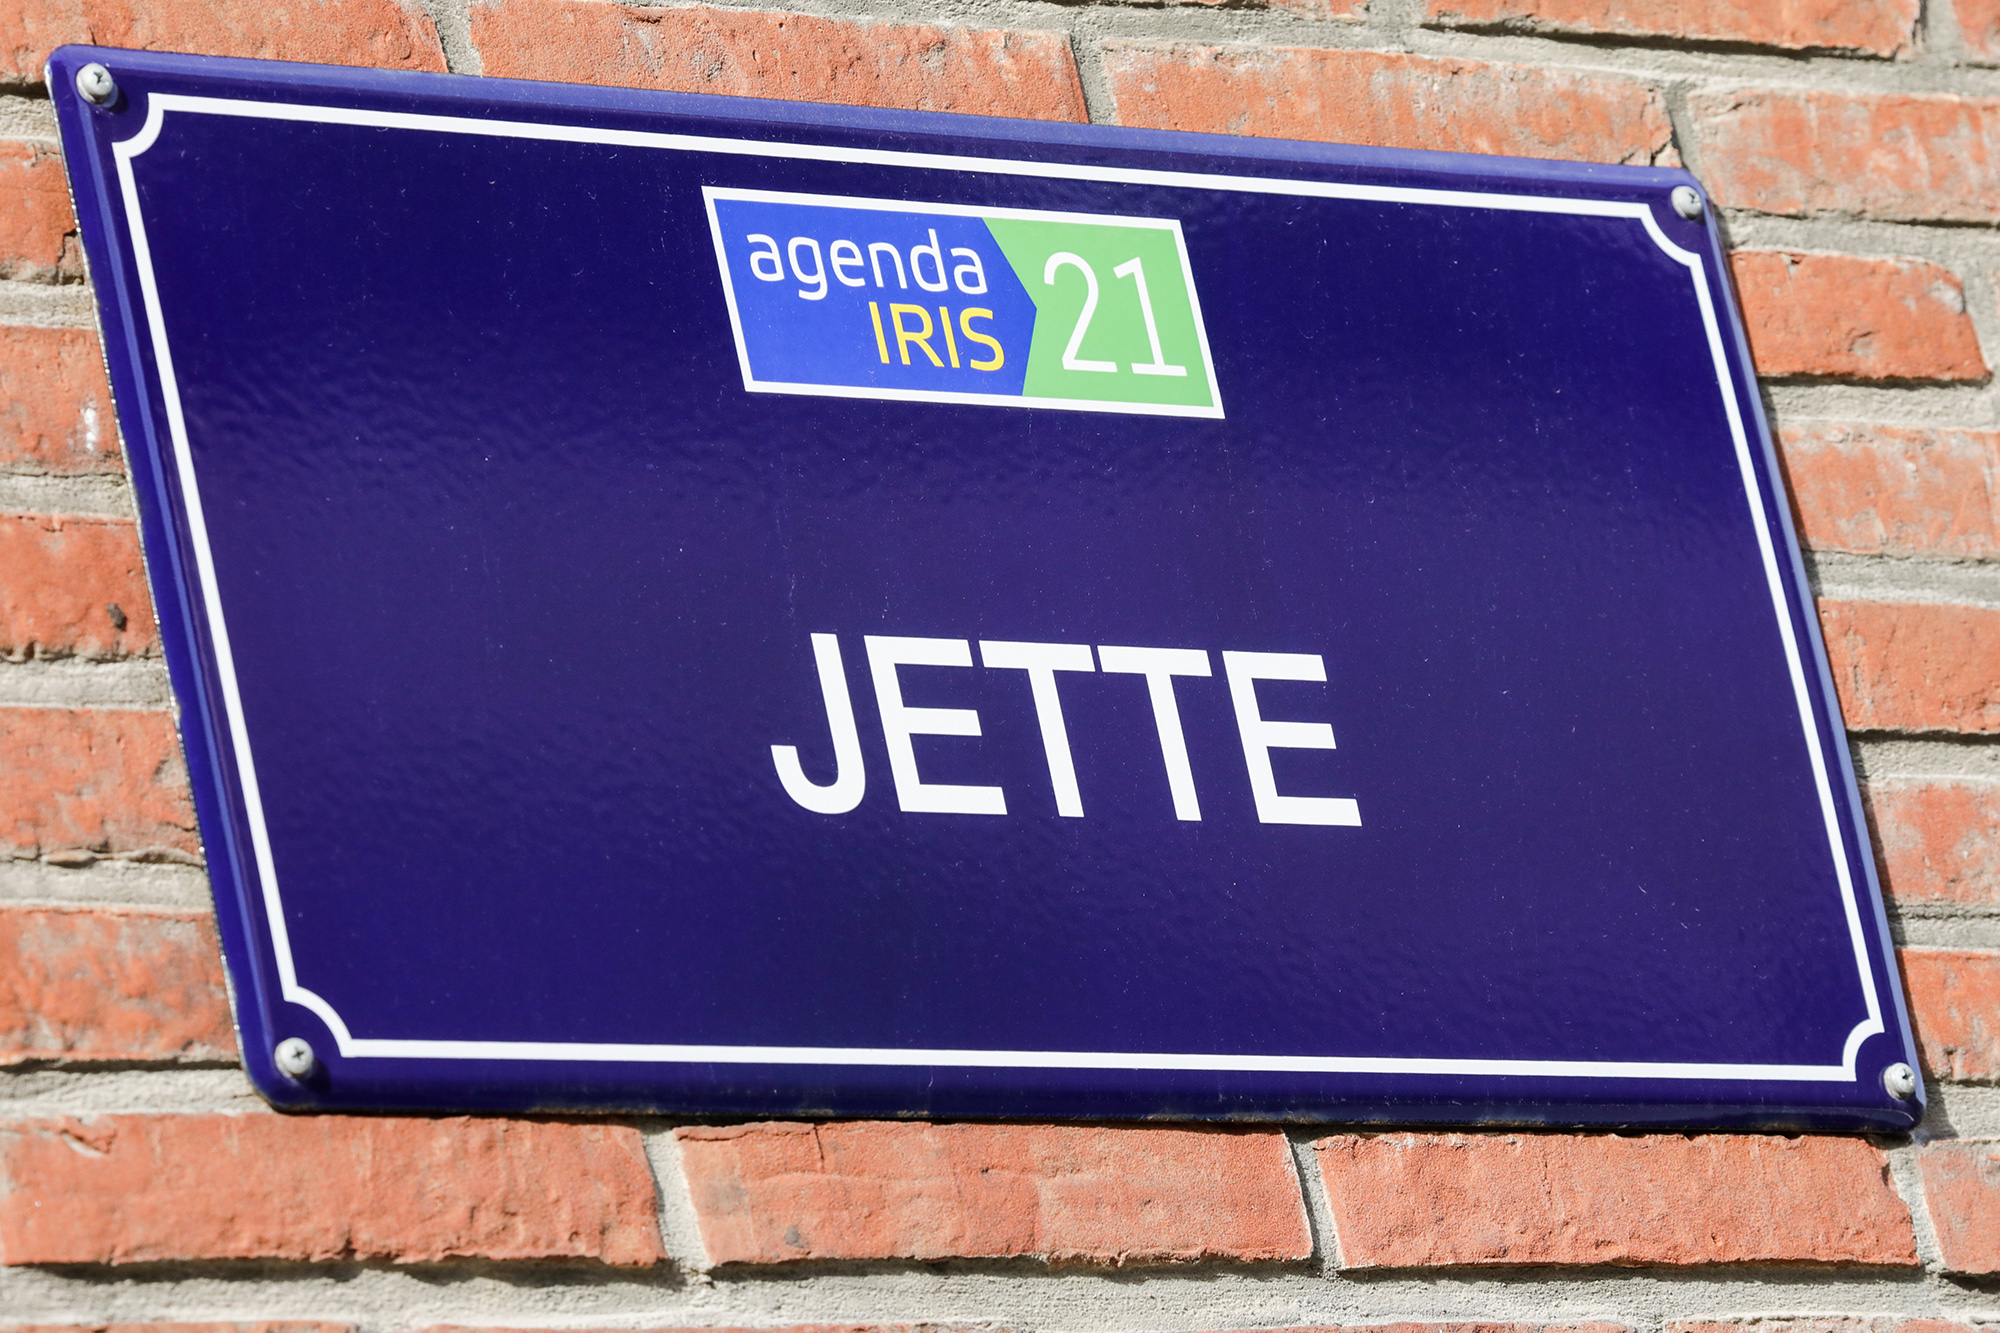 Name der Brüsseler Gemeinde Jette auf einem Straßenschild (Bild: Thierry Roge/Belga)